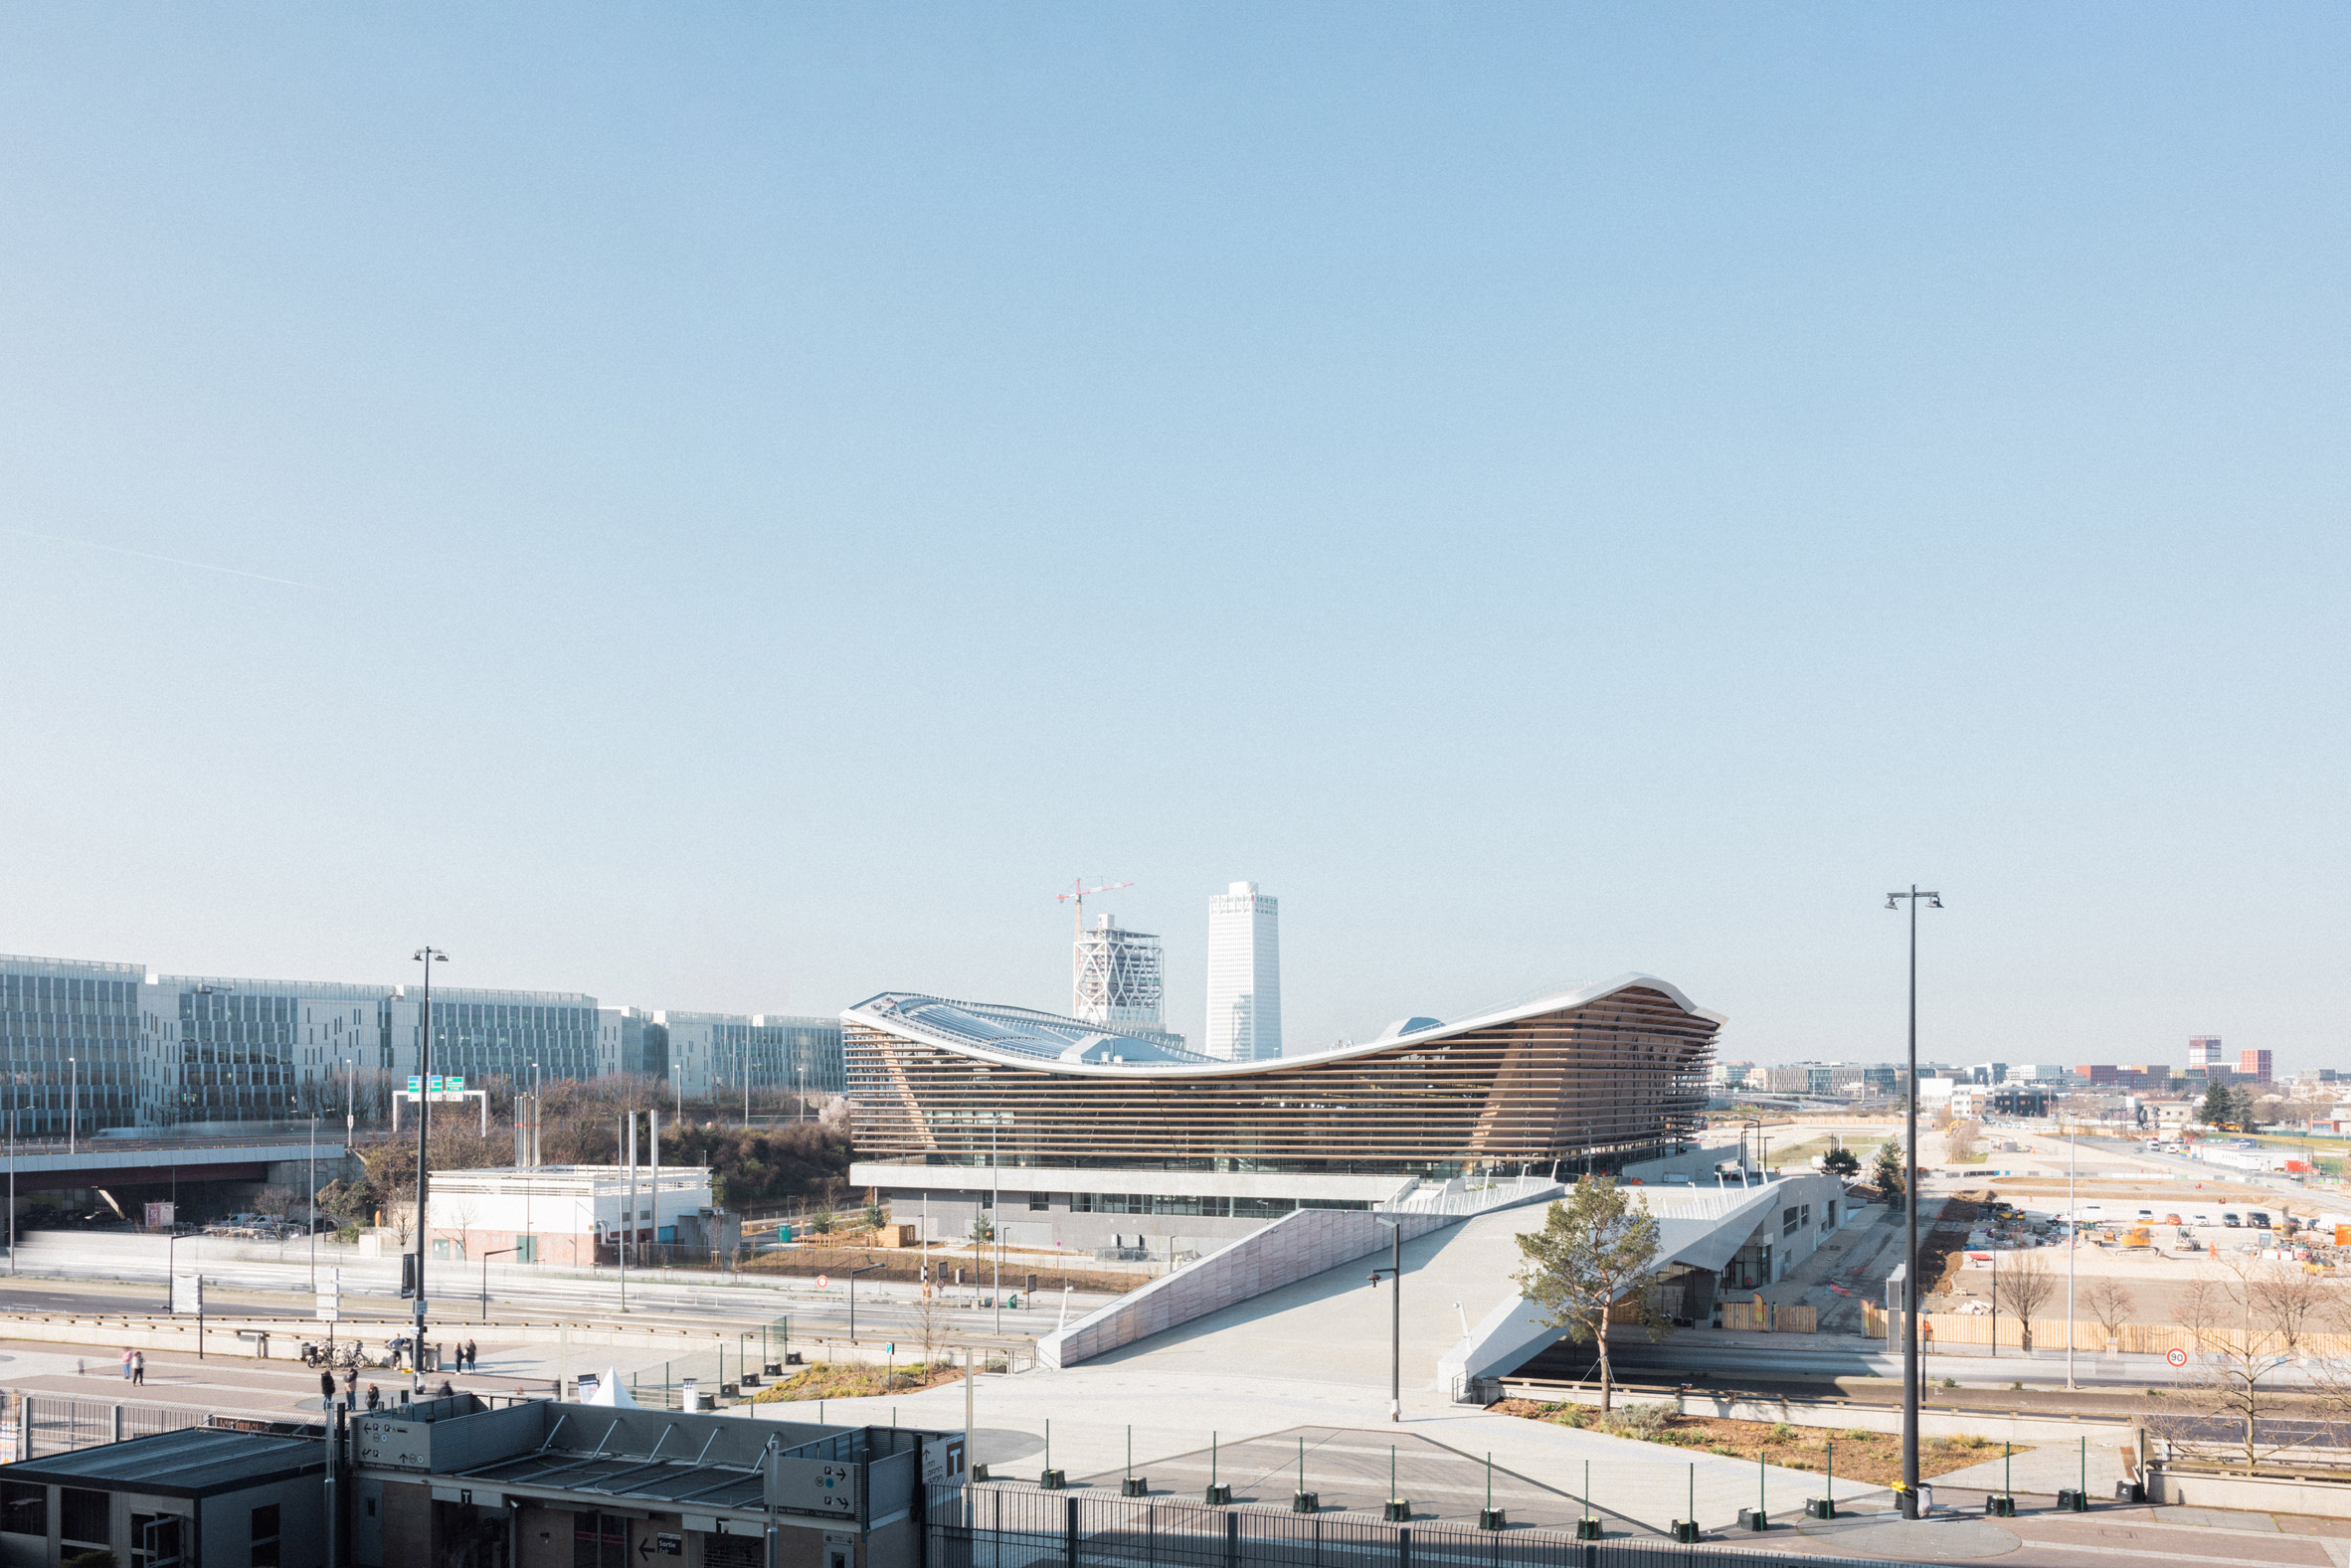 Exterior of the Aquatics Centre for the Paris 2024 Olympic Games